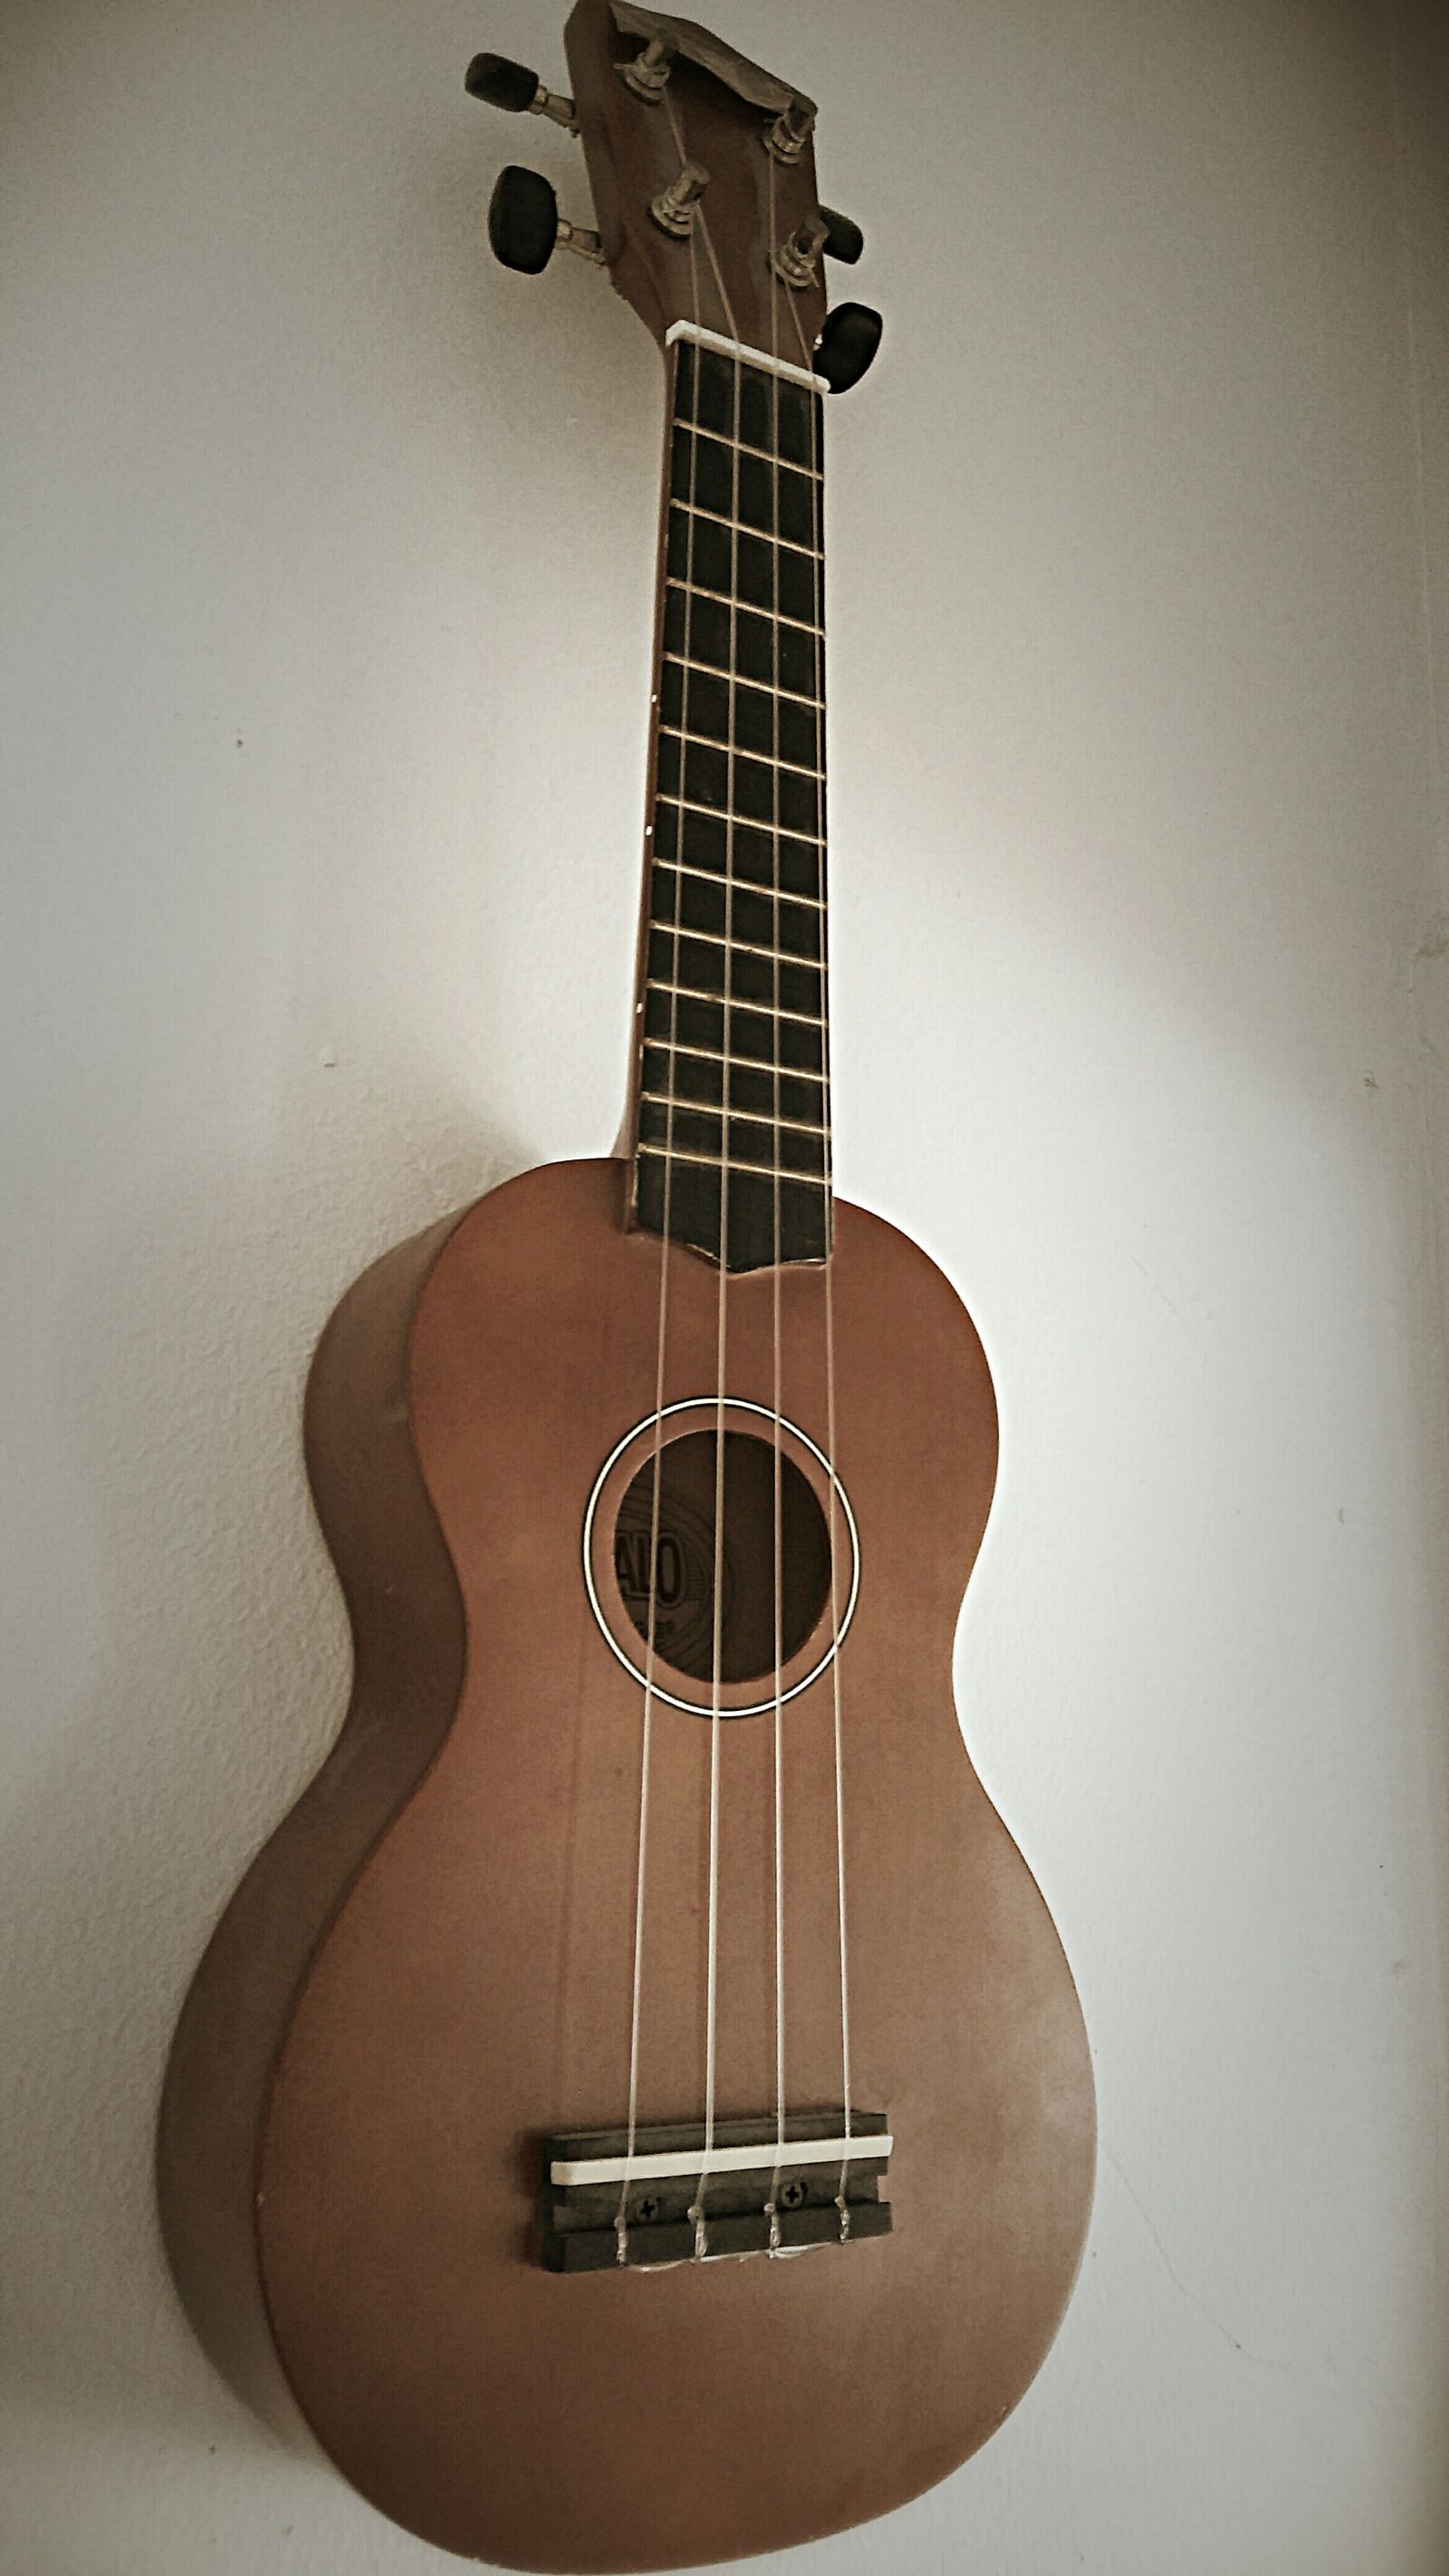 LG H650E sample photo. Ukulele, music, instrument photography